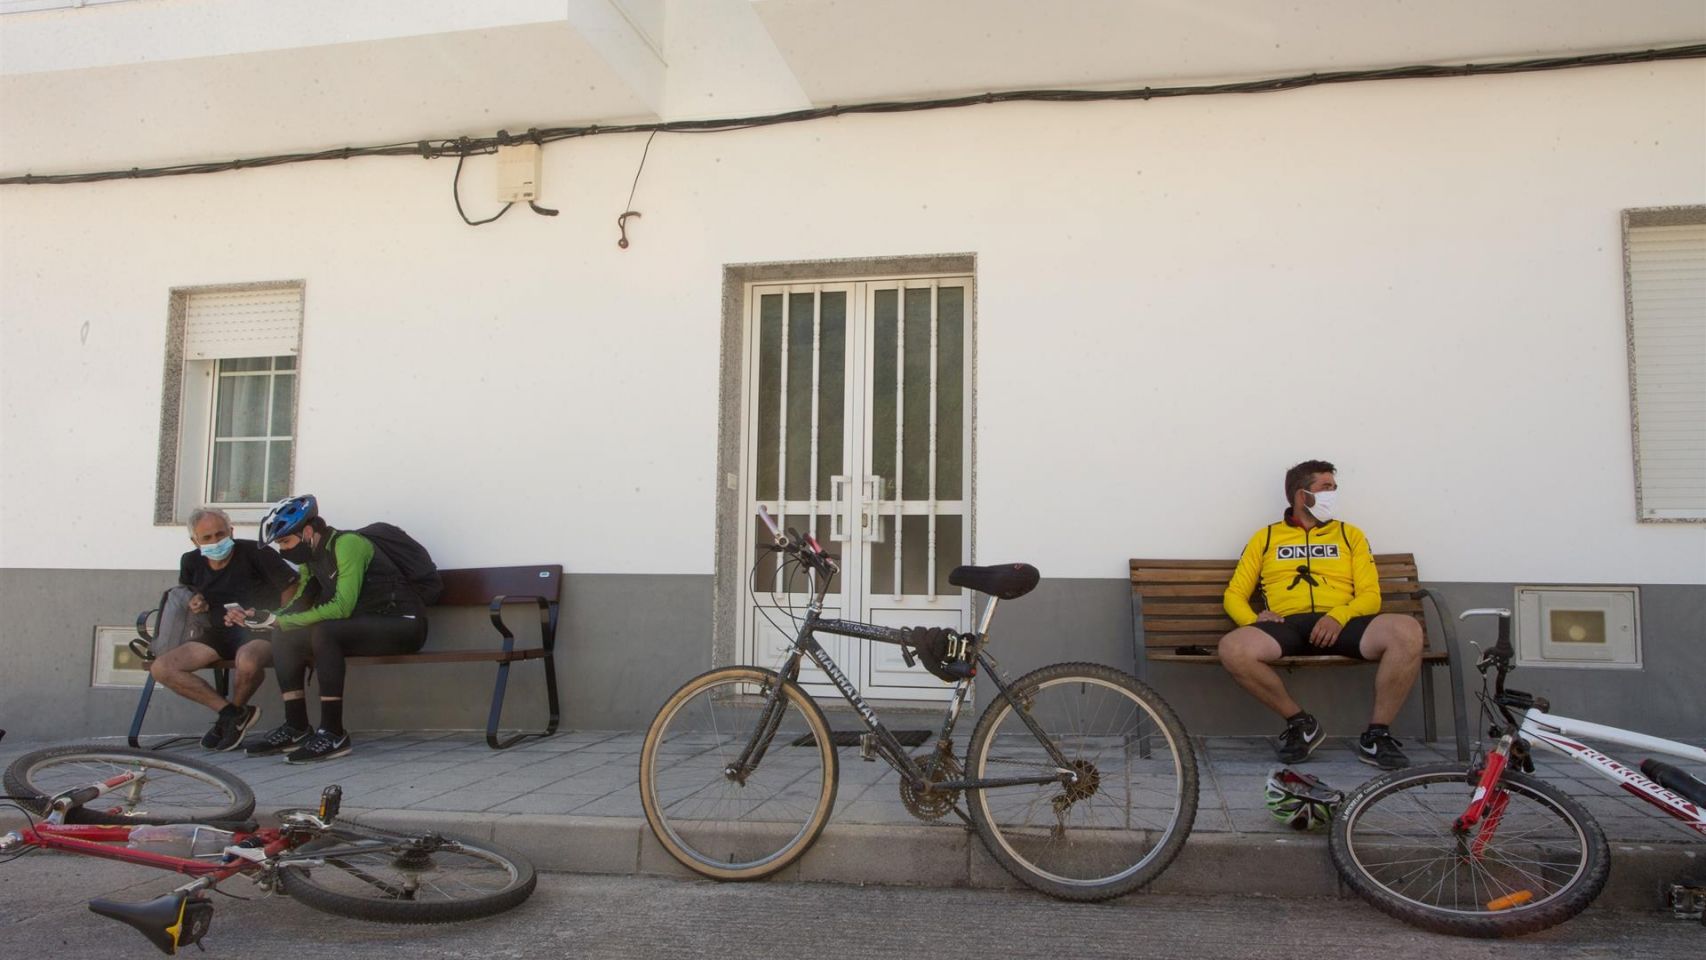 Tres peregrinos descansan junto a sus bicicletas en Triacastela (Lugo).